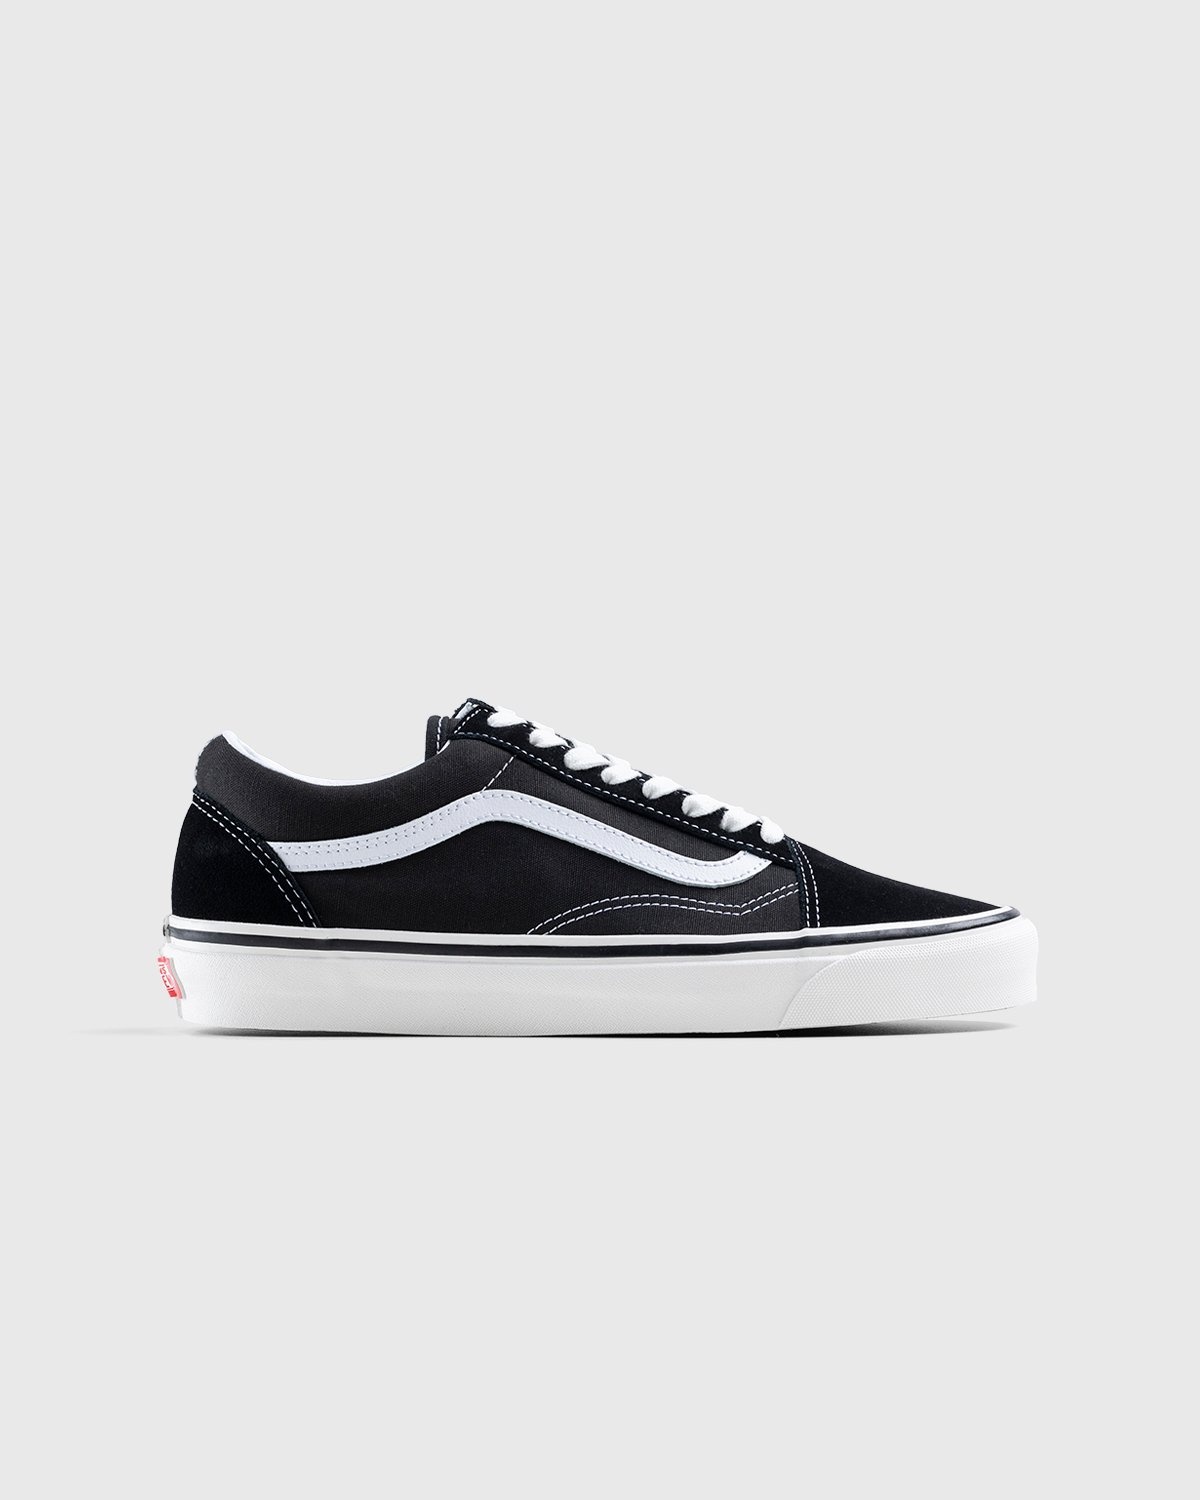 Vans – Anaheim Factory Old Skool 36 DX Black - Sneakers - Black - Image 1